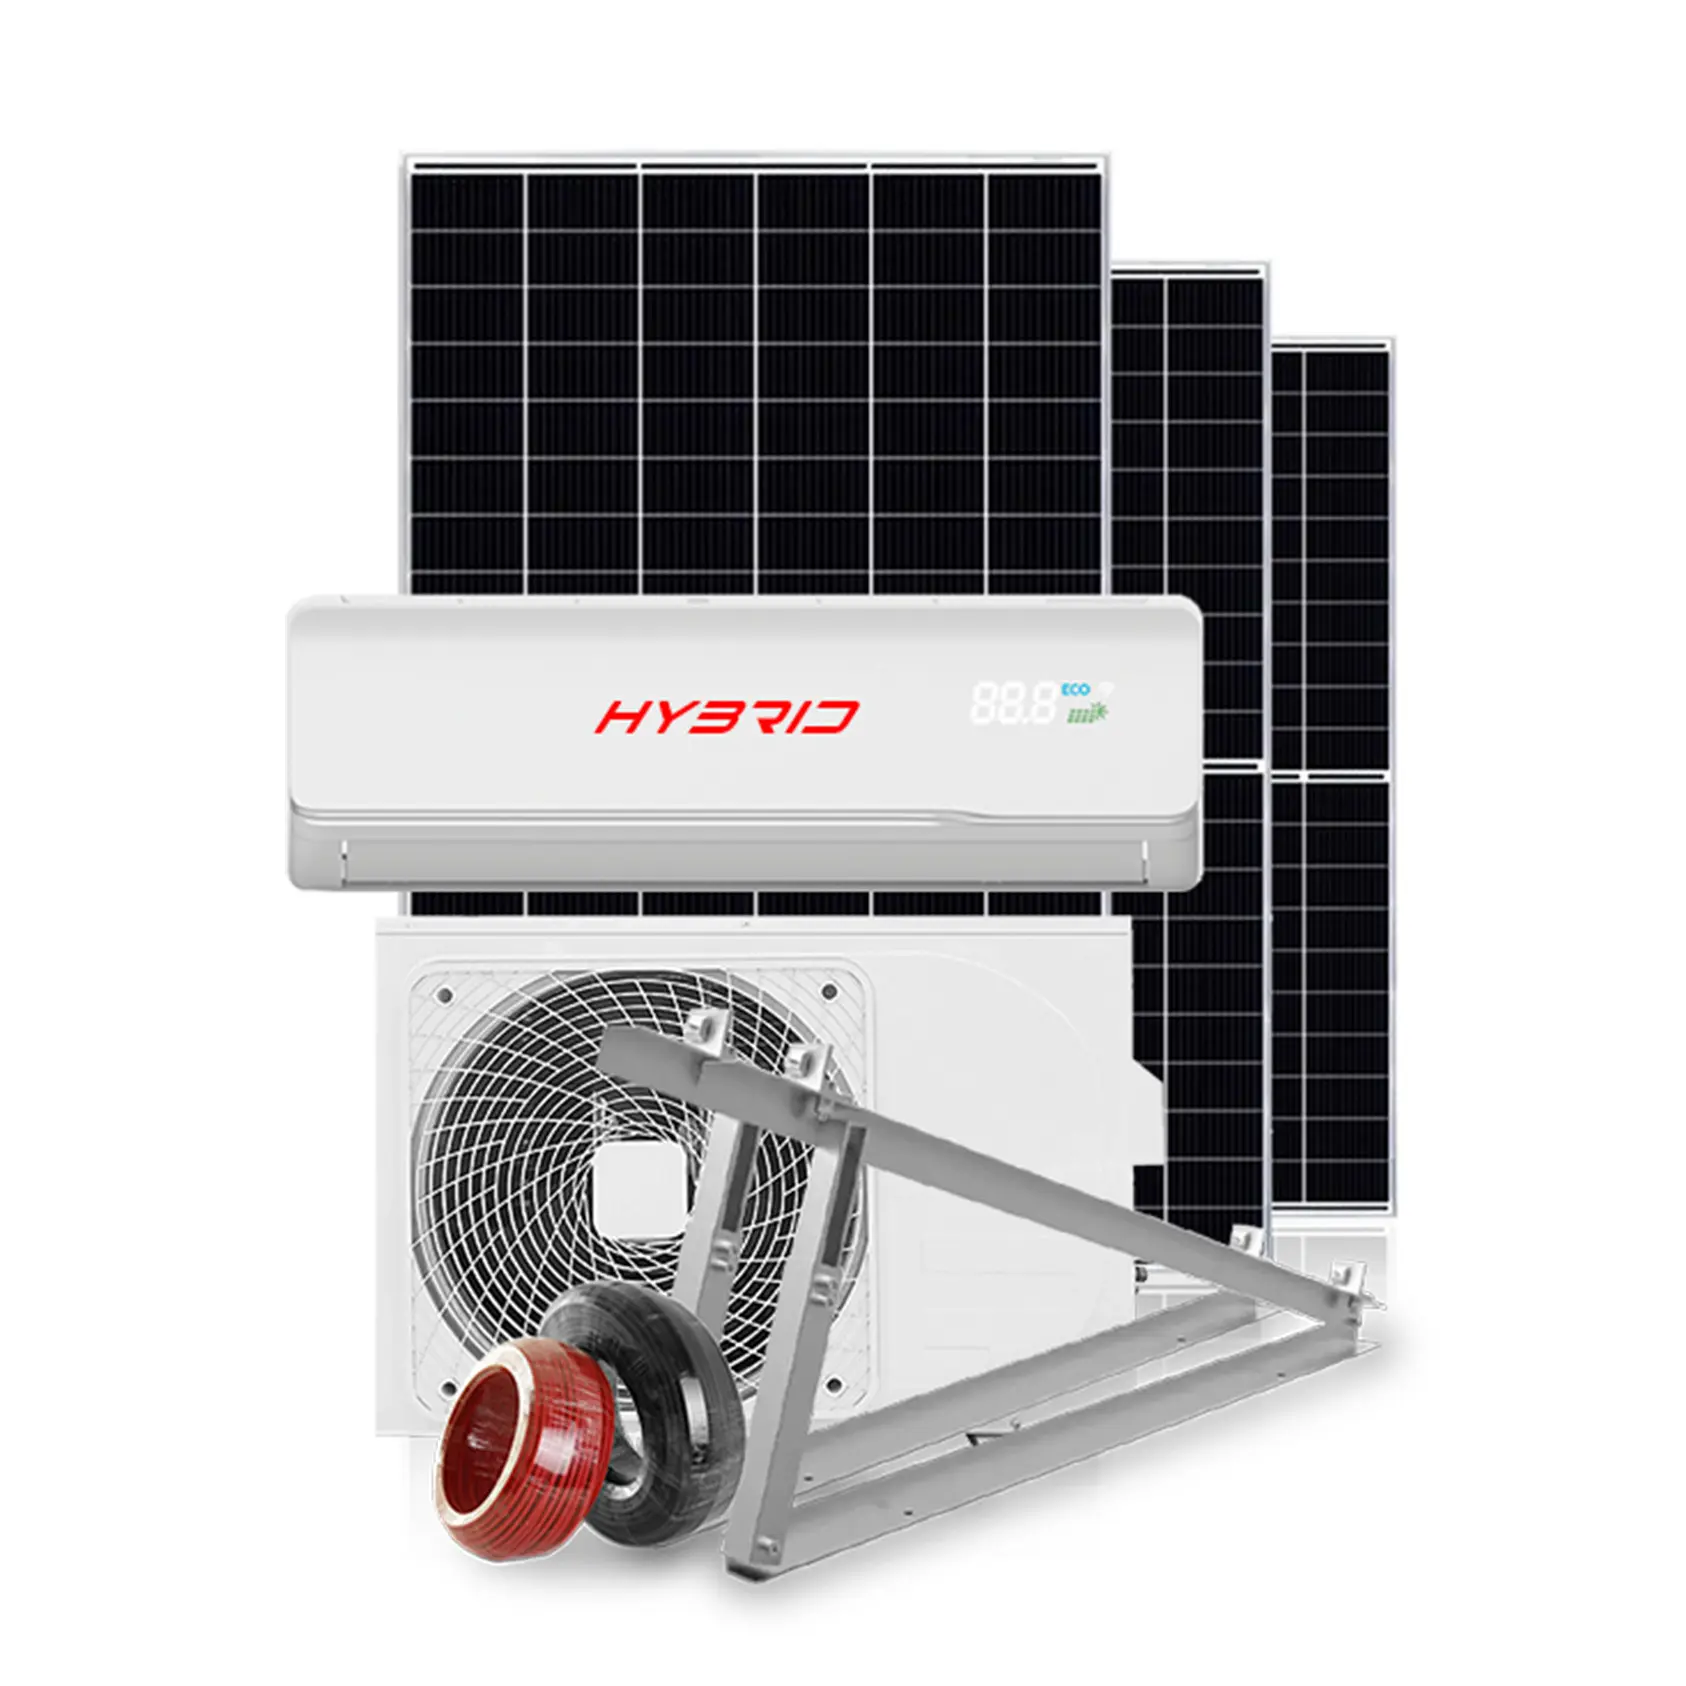 GMCC altamente compressore set completo condizionatore d'aria portatile solare inverter solare condizionatore d'aria ac condizionatore d'aria solare prezzo